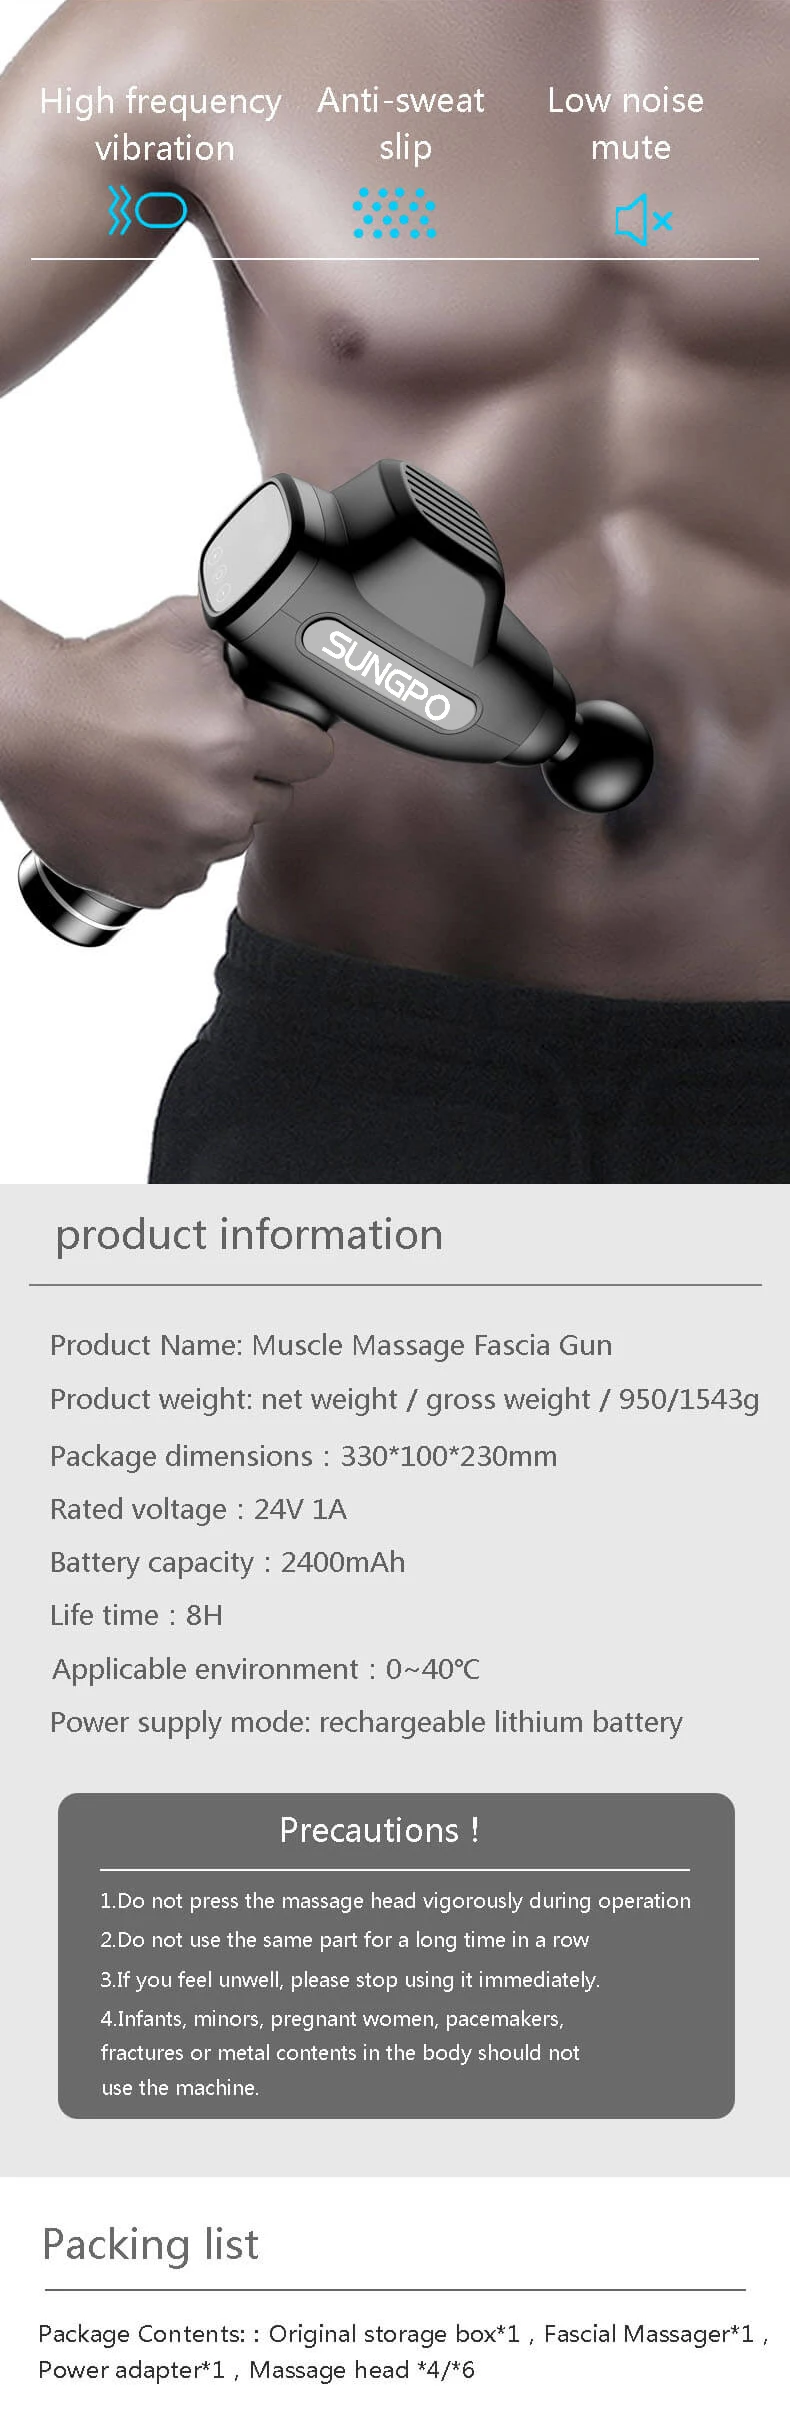 Wireless Body Deep Tissue Sports Massage Gun